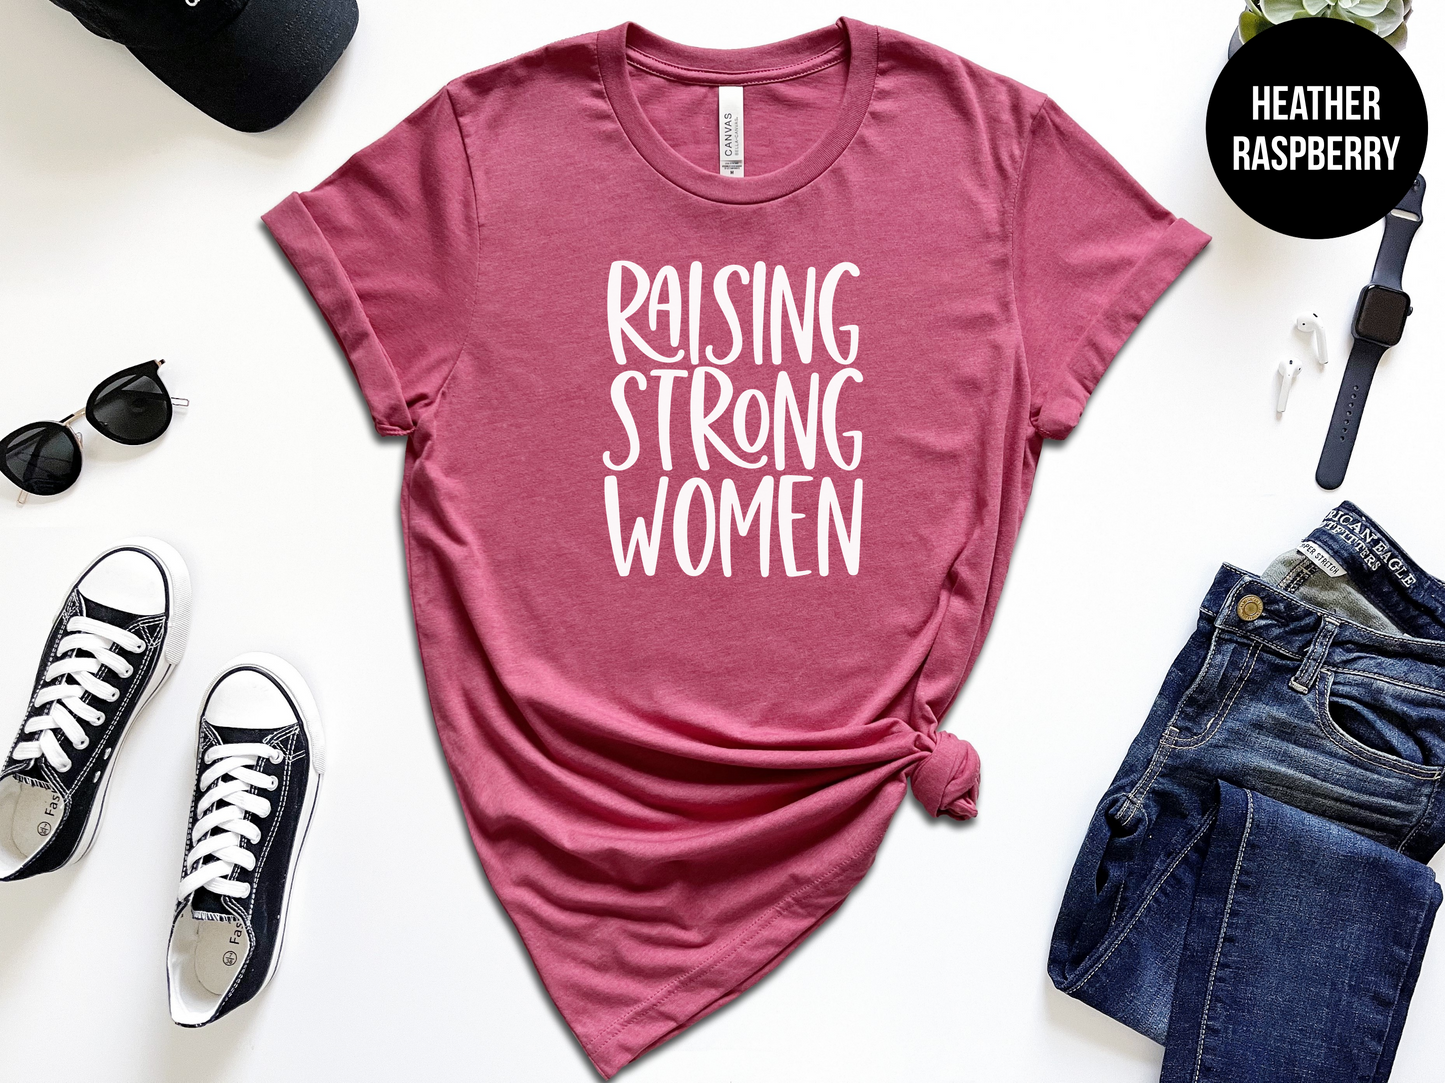 Raising Strong Women